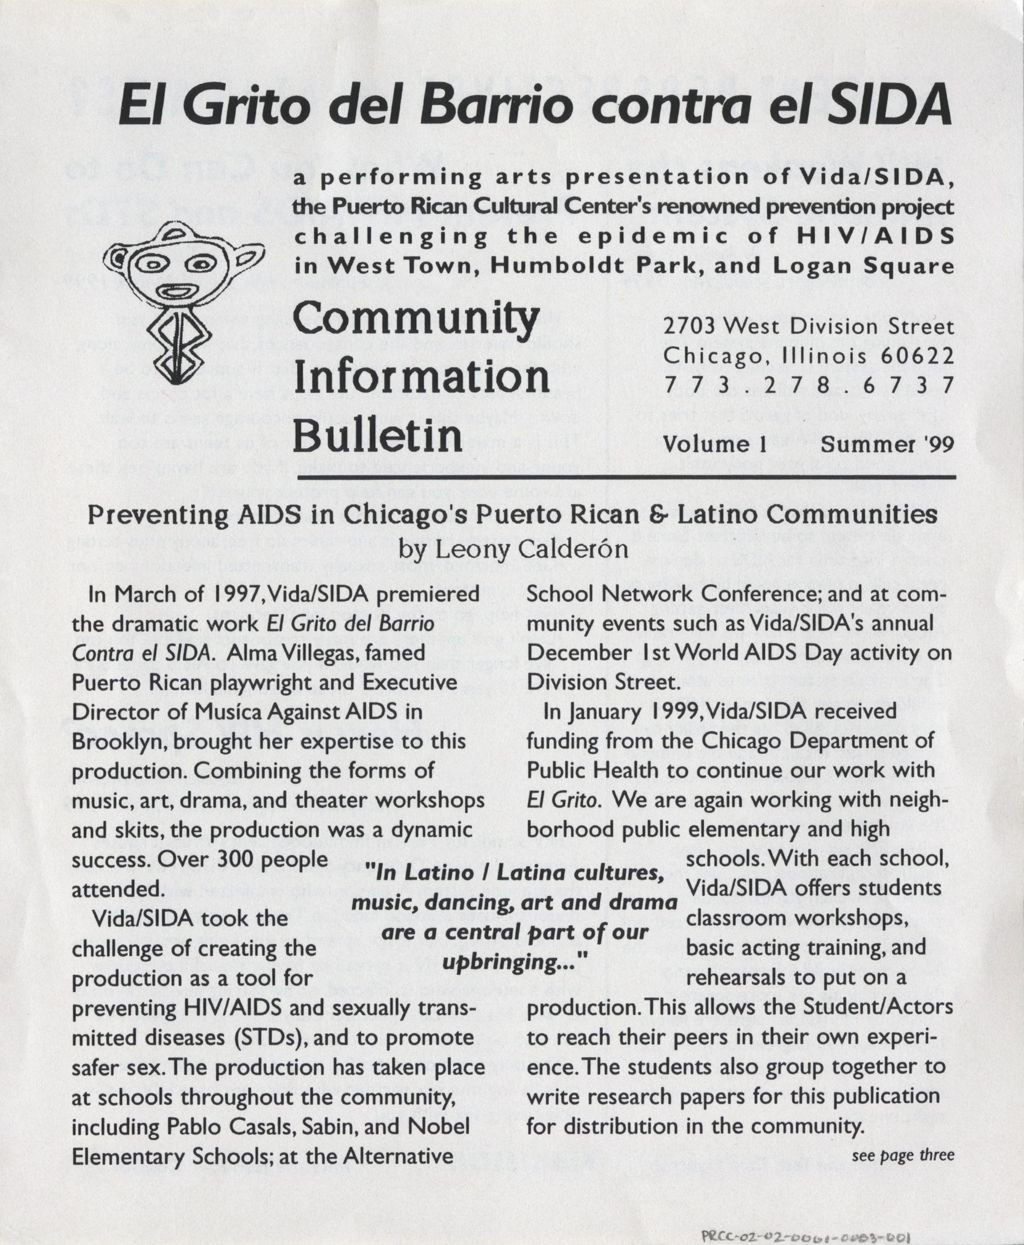 El Grito del Barrio contra el SIDA: Community Information Bulletin